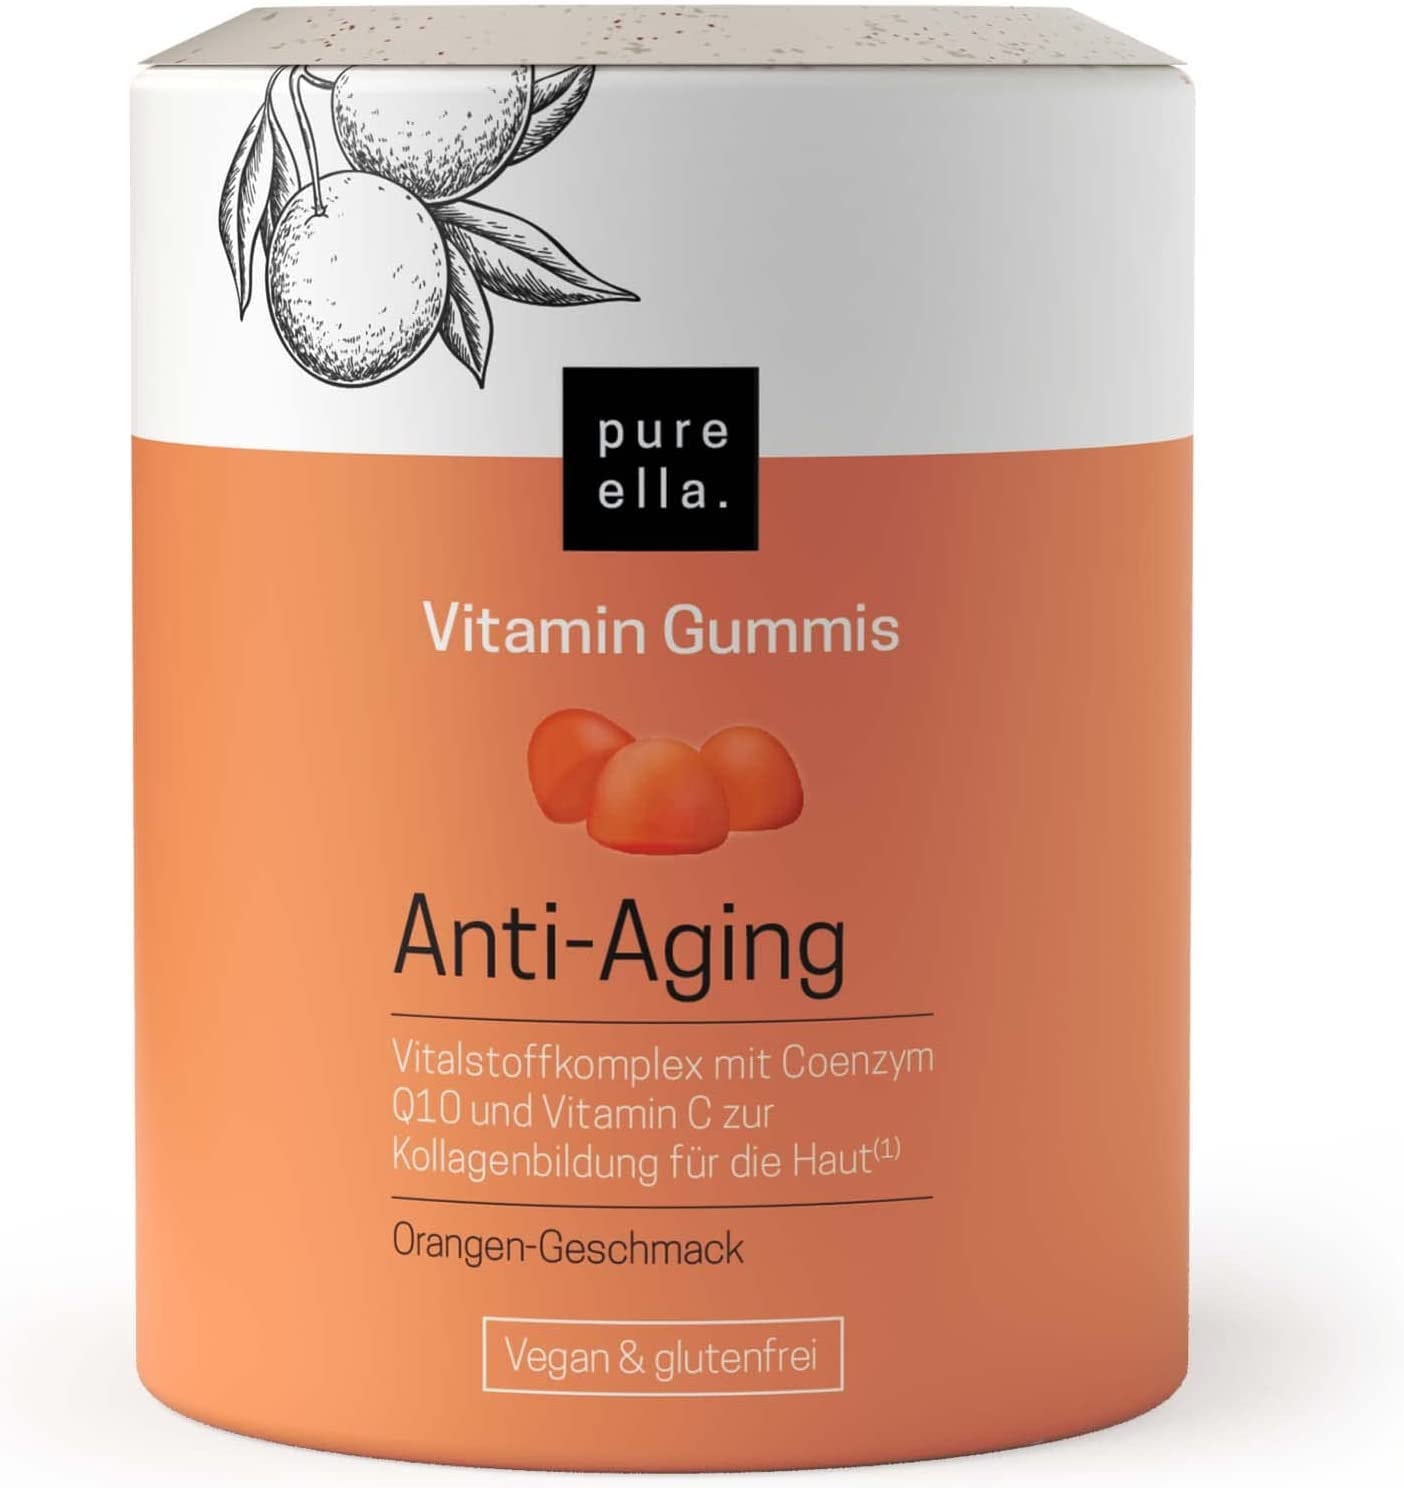 Pure Ella - Vitamin-Gummis ANTI-AGING - Fruchtgummi-Nahrungsergänzung für jugendlich aussehende Haut - mit Coenzym Q10 und Vitamin C - vegan und glutenfrei - Monatspackung, 1 x 60 Stück